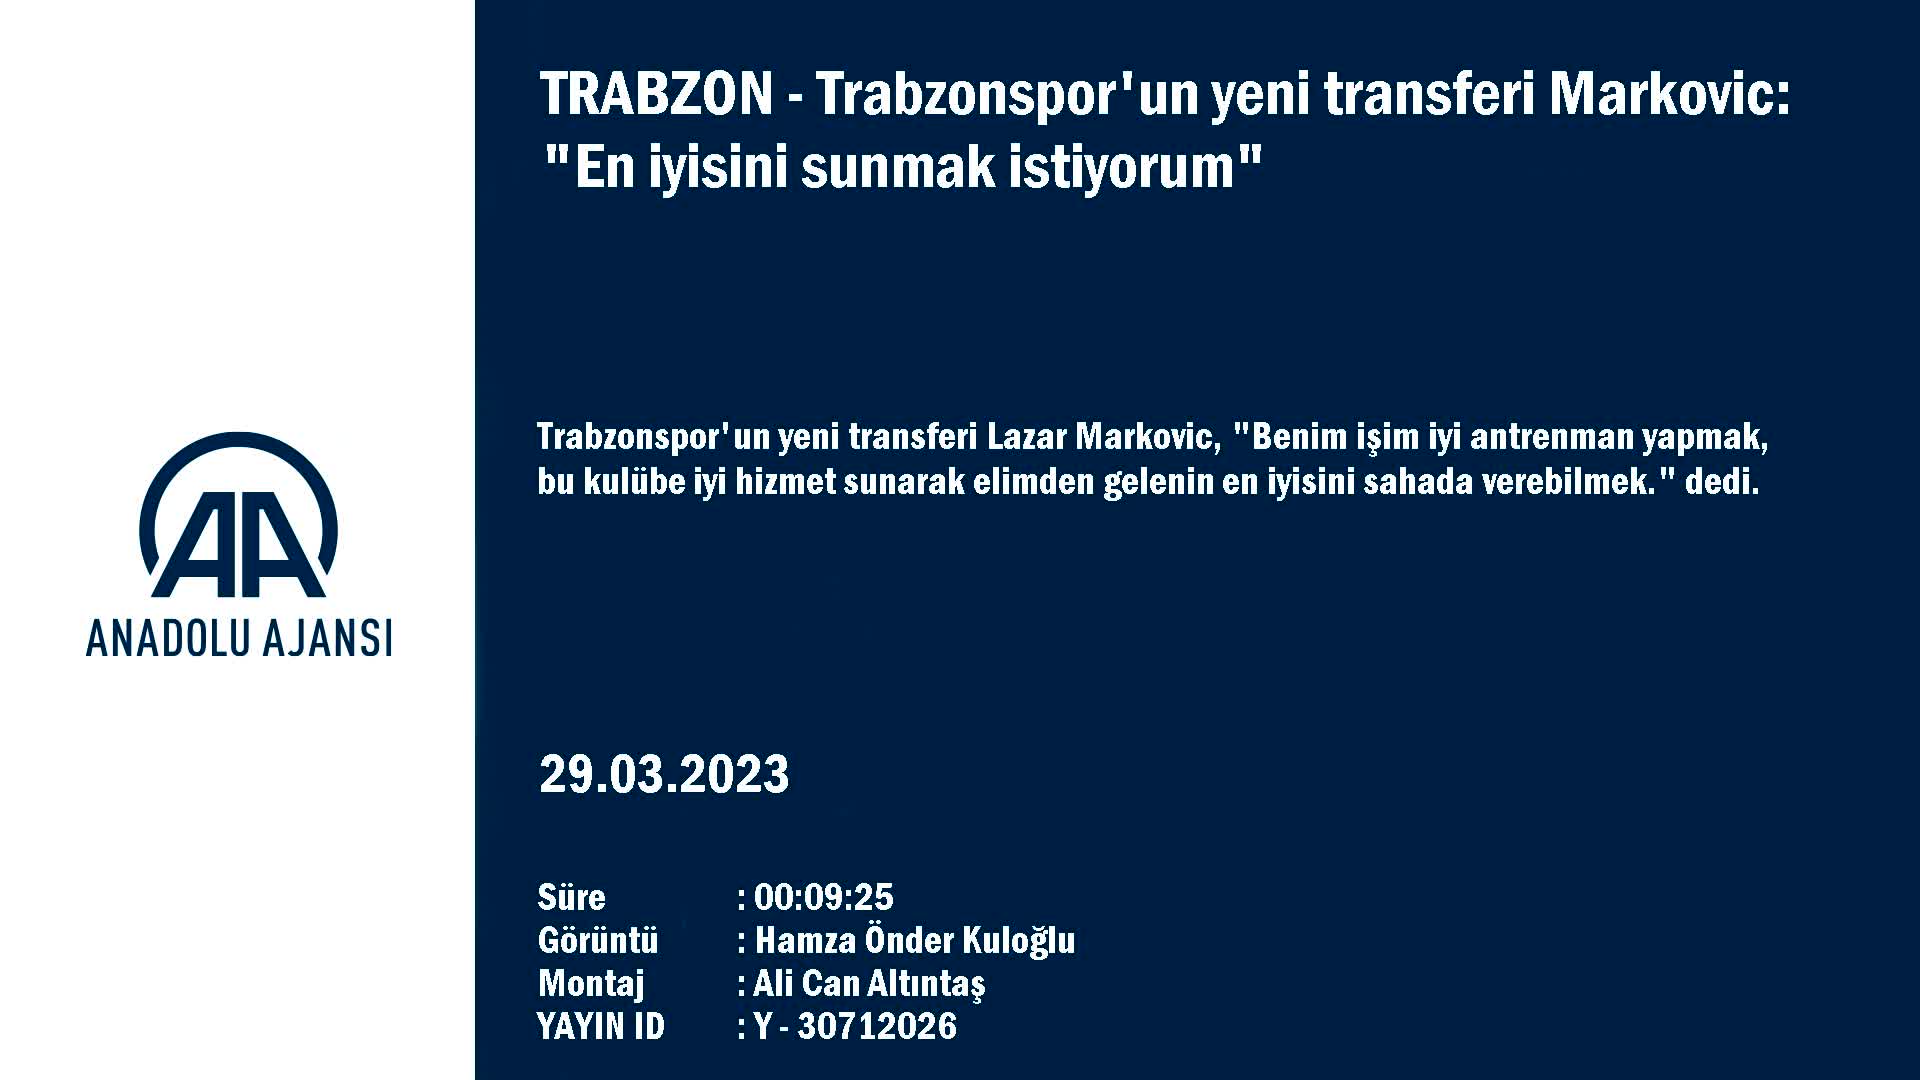 Trabzonspor’un yeni transferi Markovic’den değerlendirme: